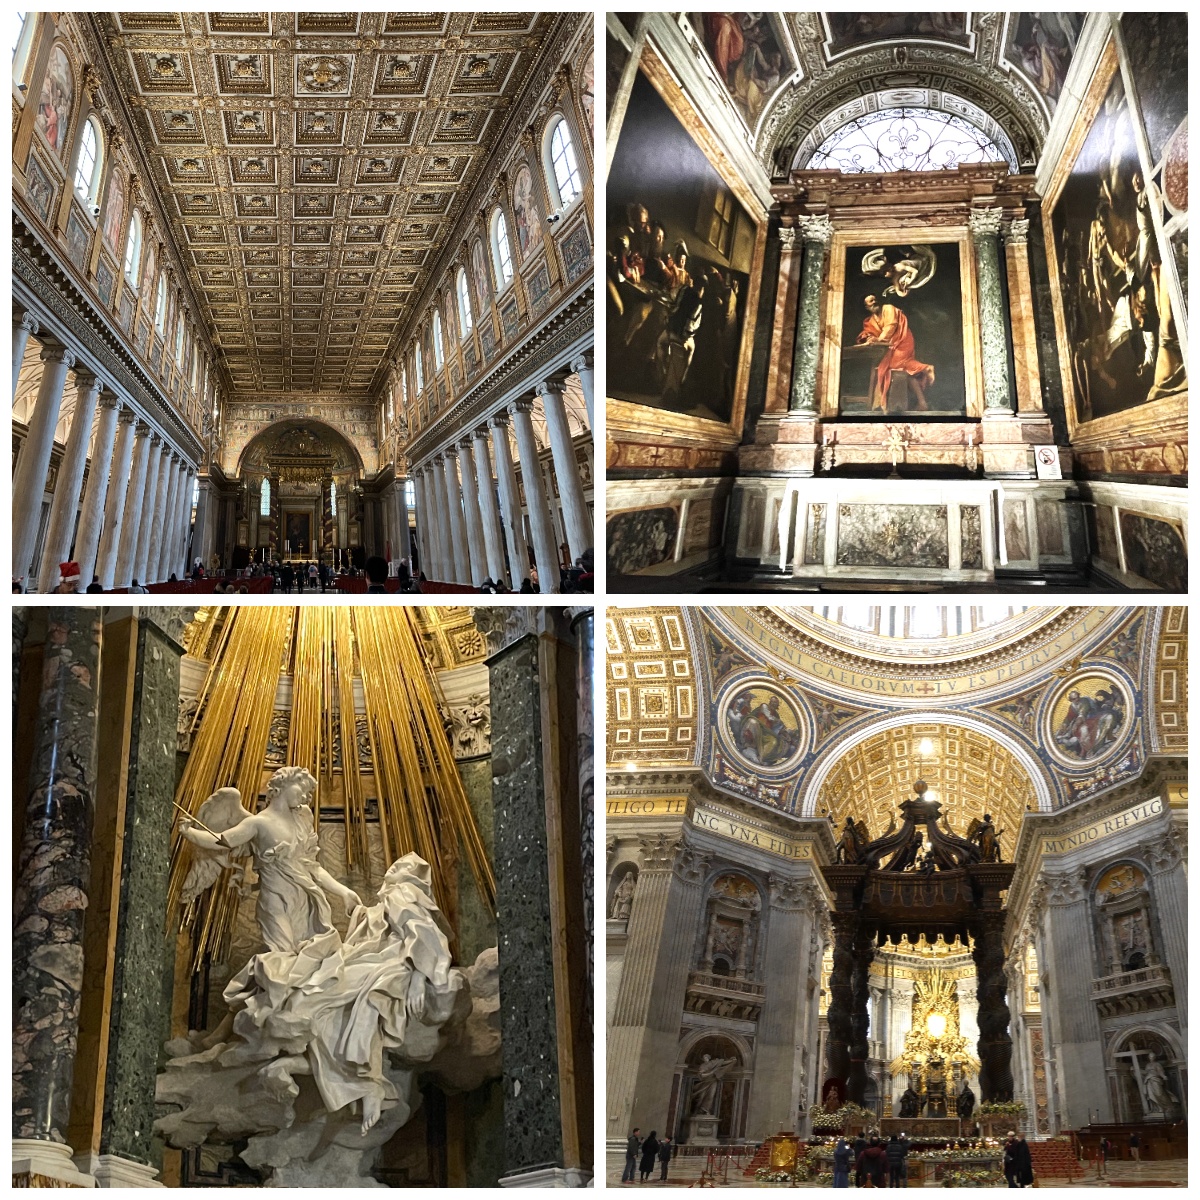 ローマ、サンピエトロ大聖堂の大天蓋、サンタマリアマッジョーレ教会内部、カラバッジョ三部作、ベルニーニの聖テレーザの法悦